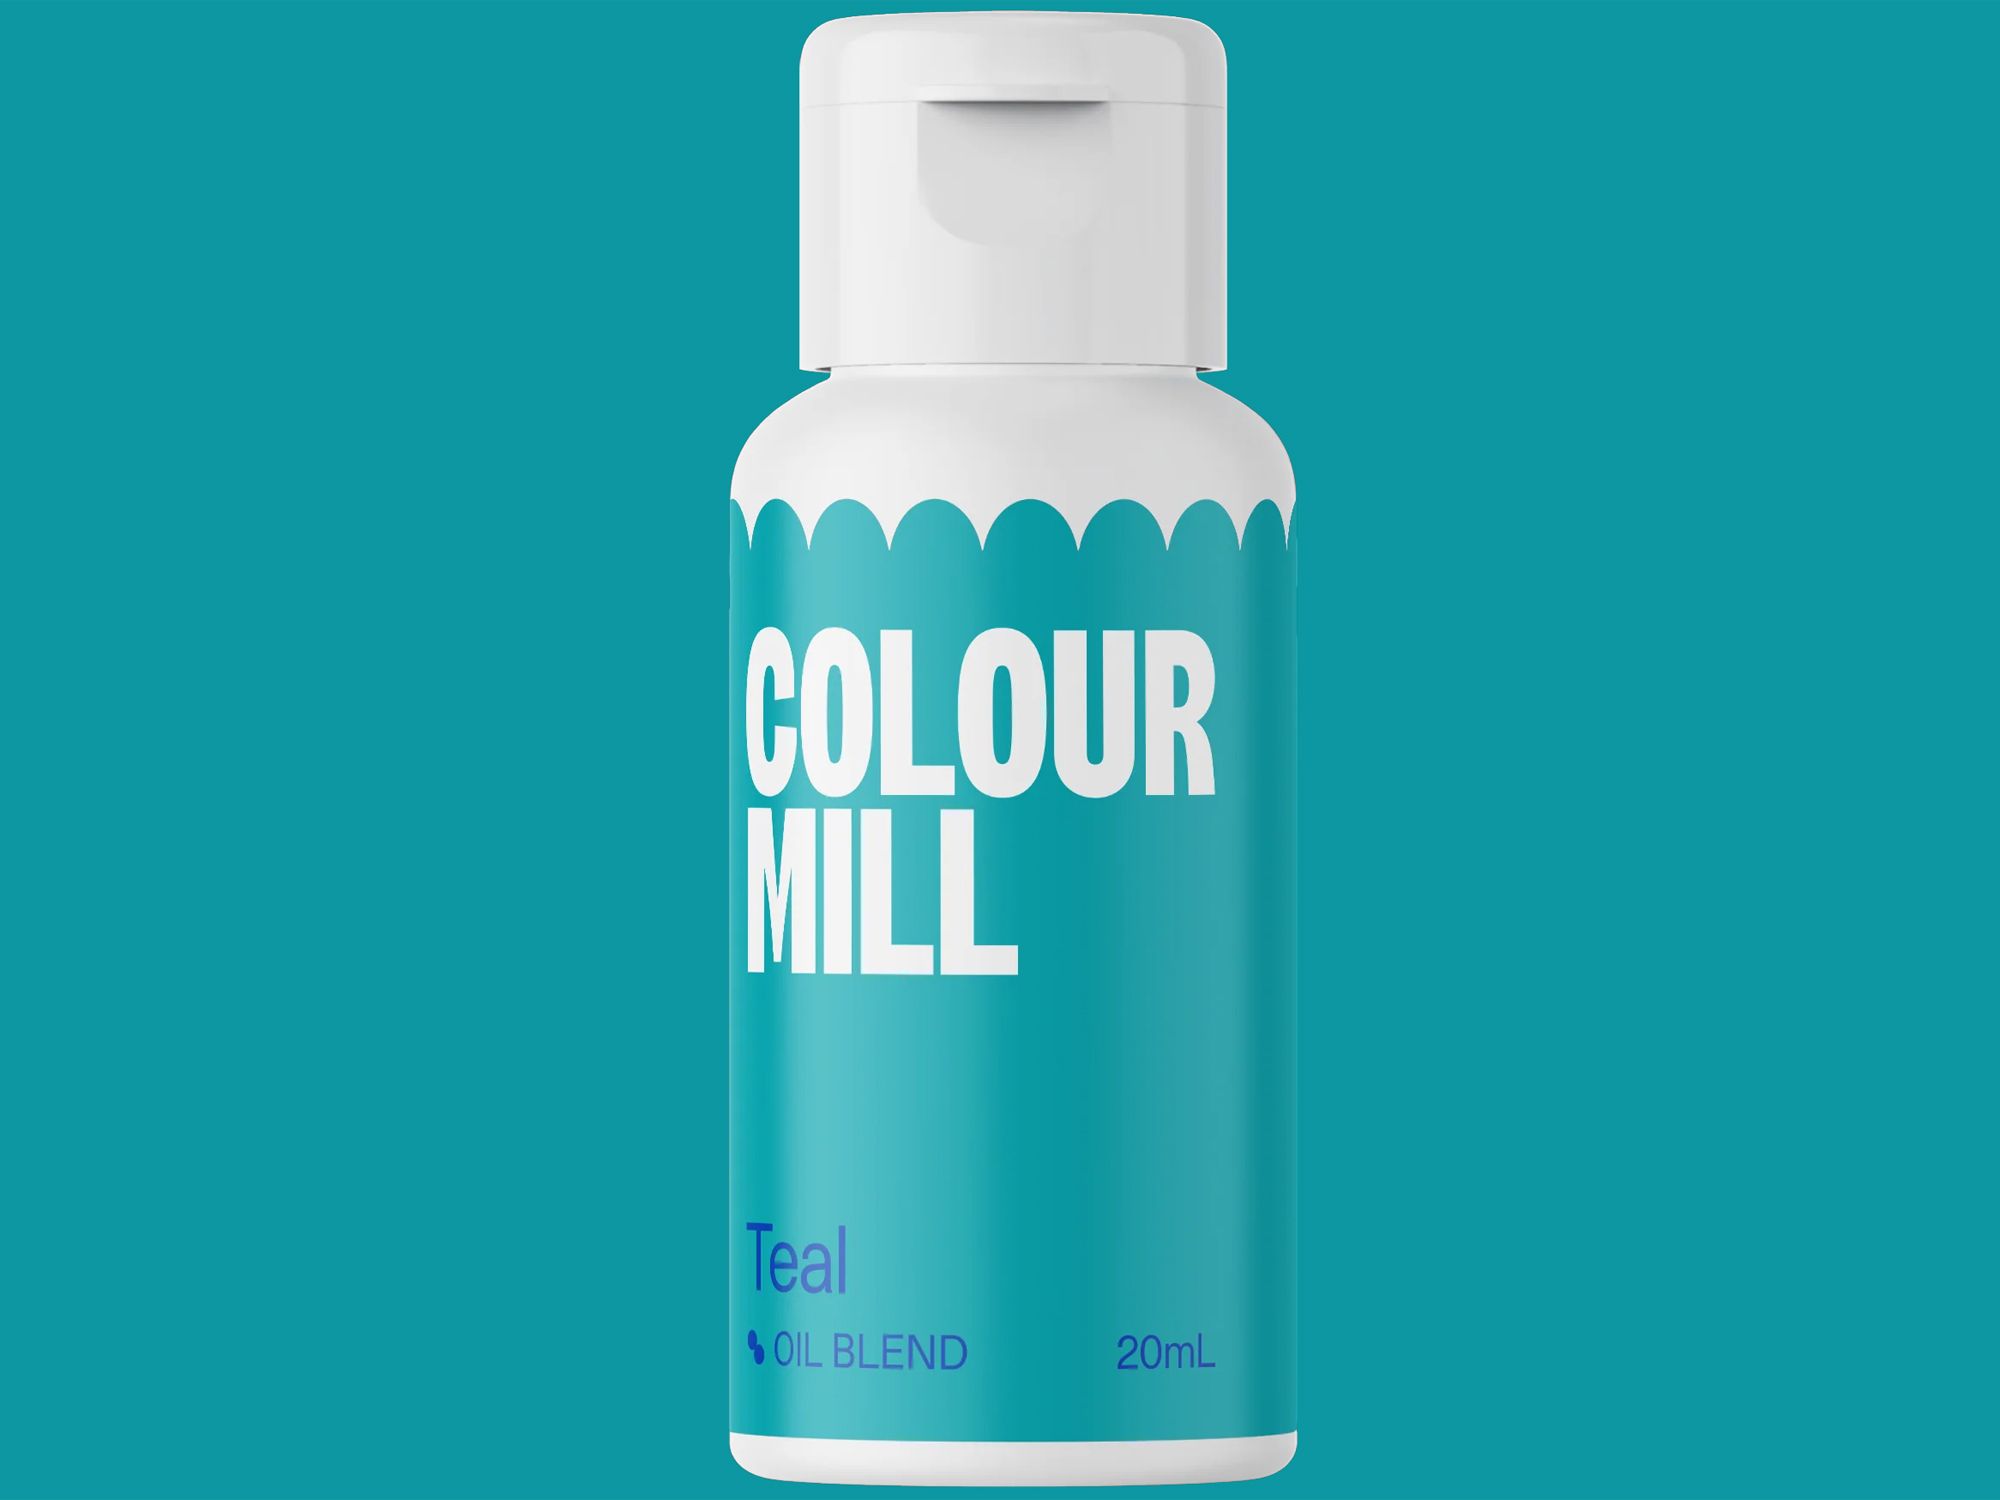 Colour Mill Teal (Oil Blend) 20ml